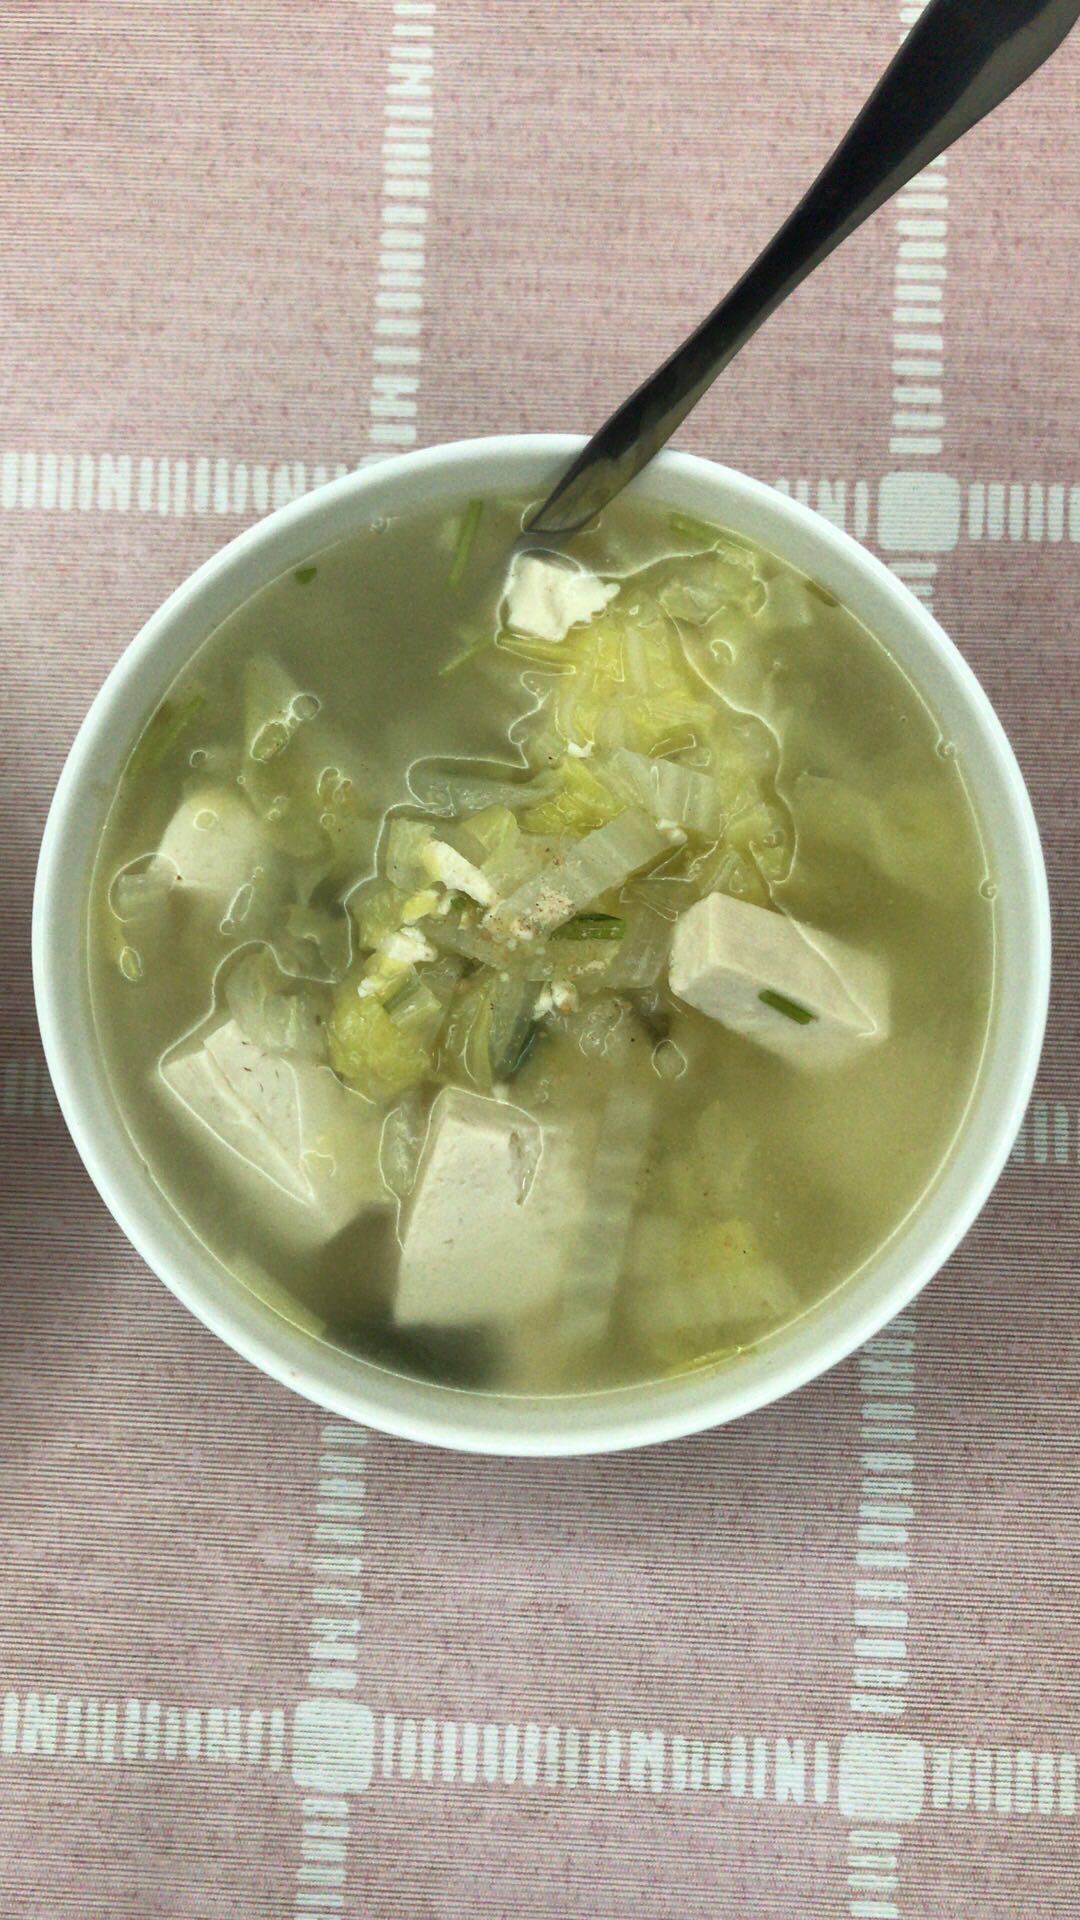 白菜豆腐汤